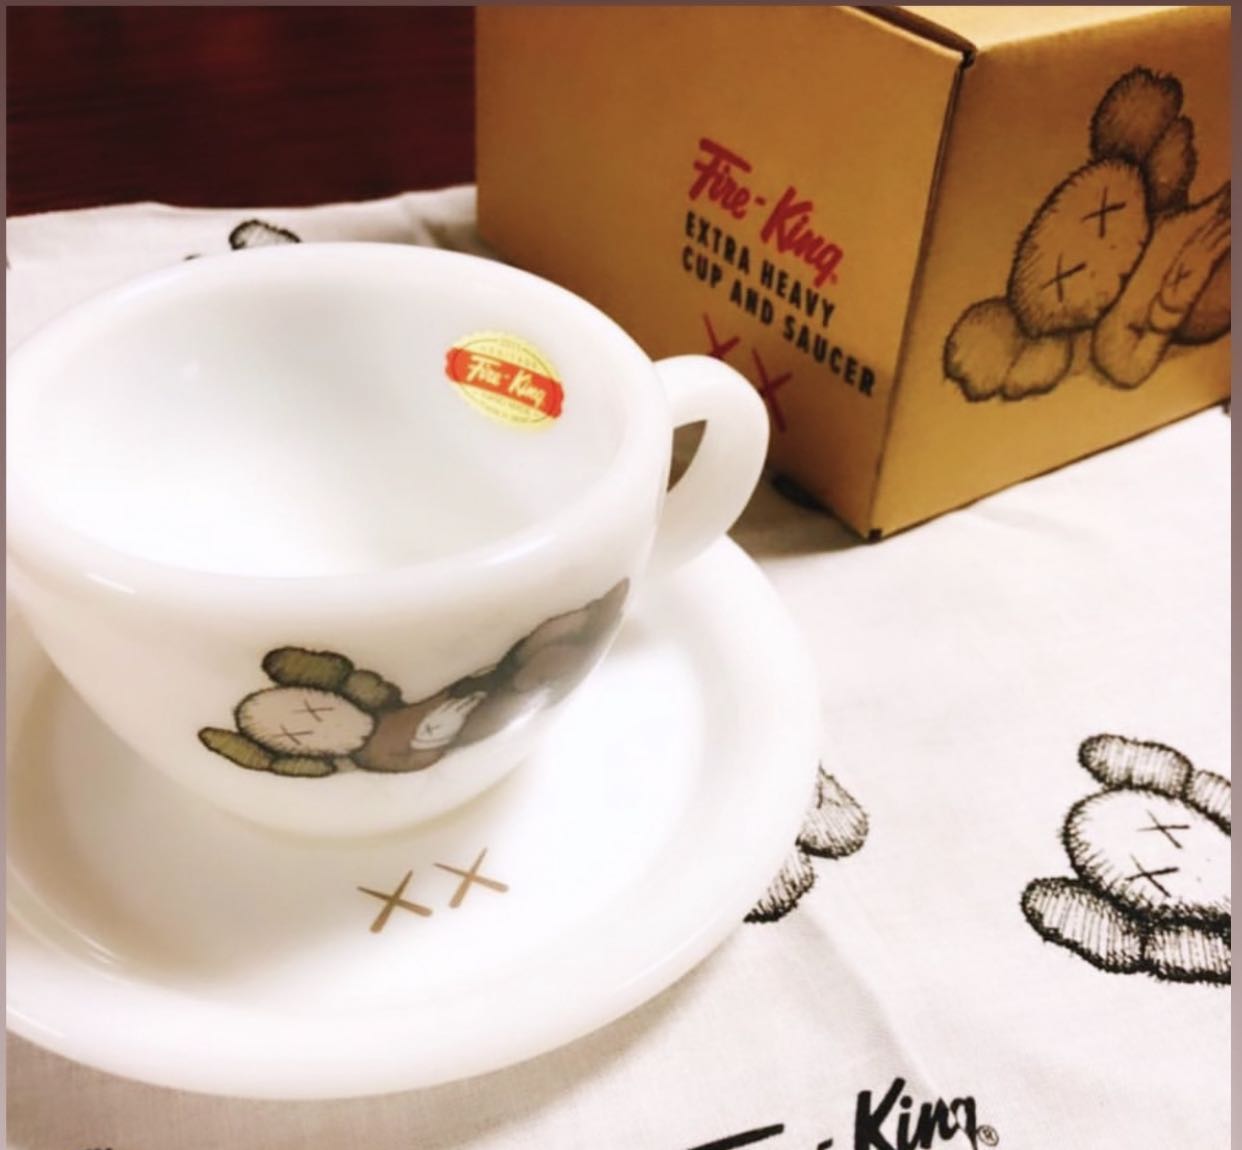 【直売半額】kaws tokyo first 限定 Fire-King セット ファイヤー 食器